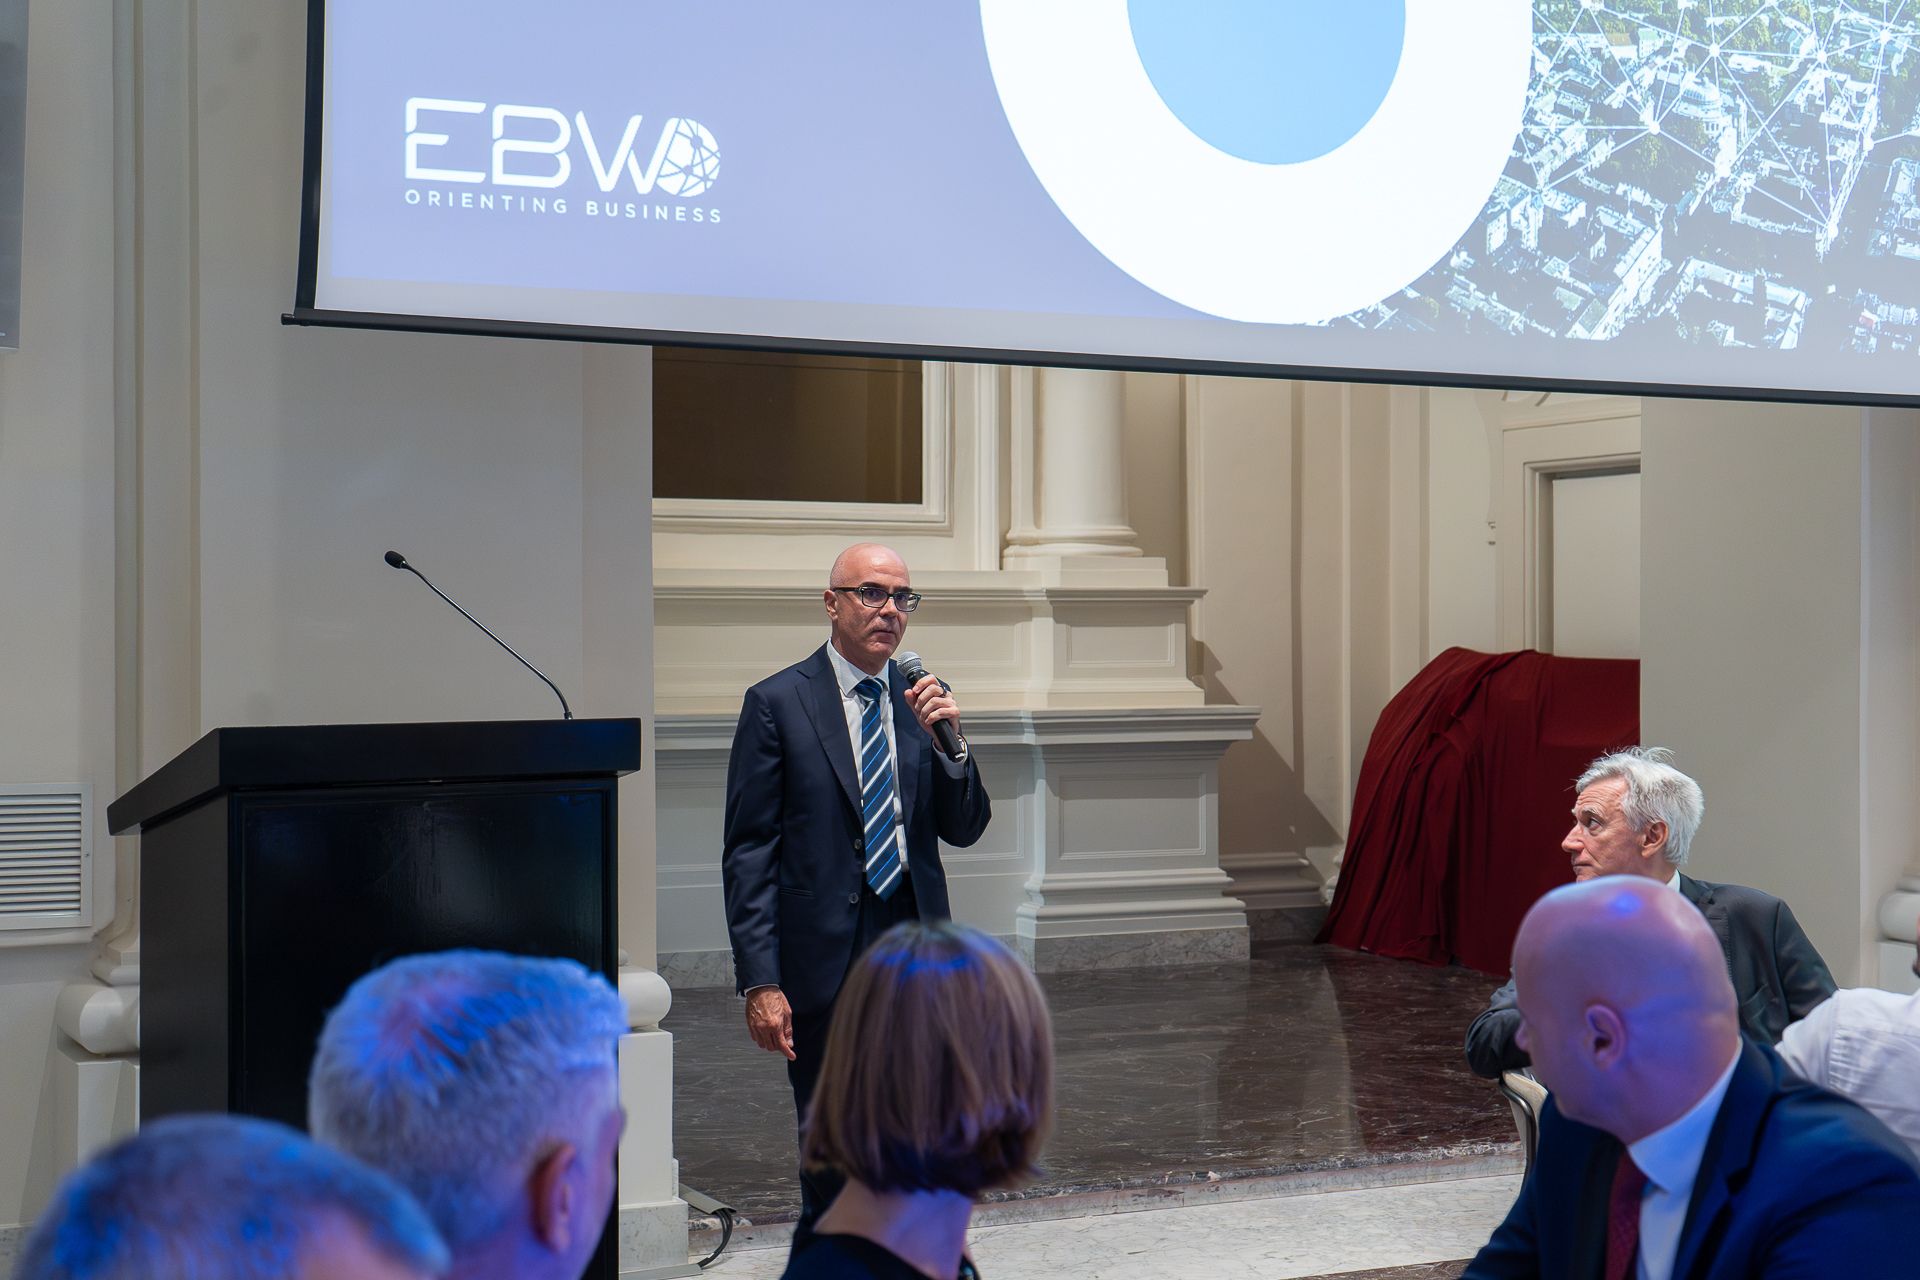 Intervento di Giovanni Giarola, Senior Account Manager GE, all'evento dei 40 anni di EBWorld con le imprese